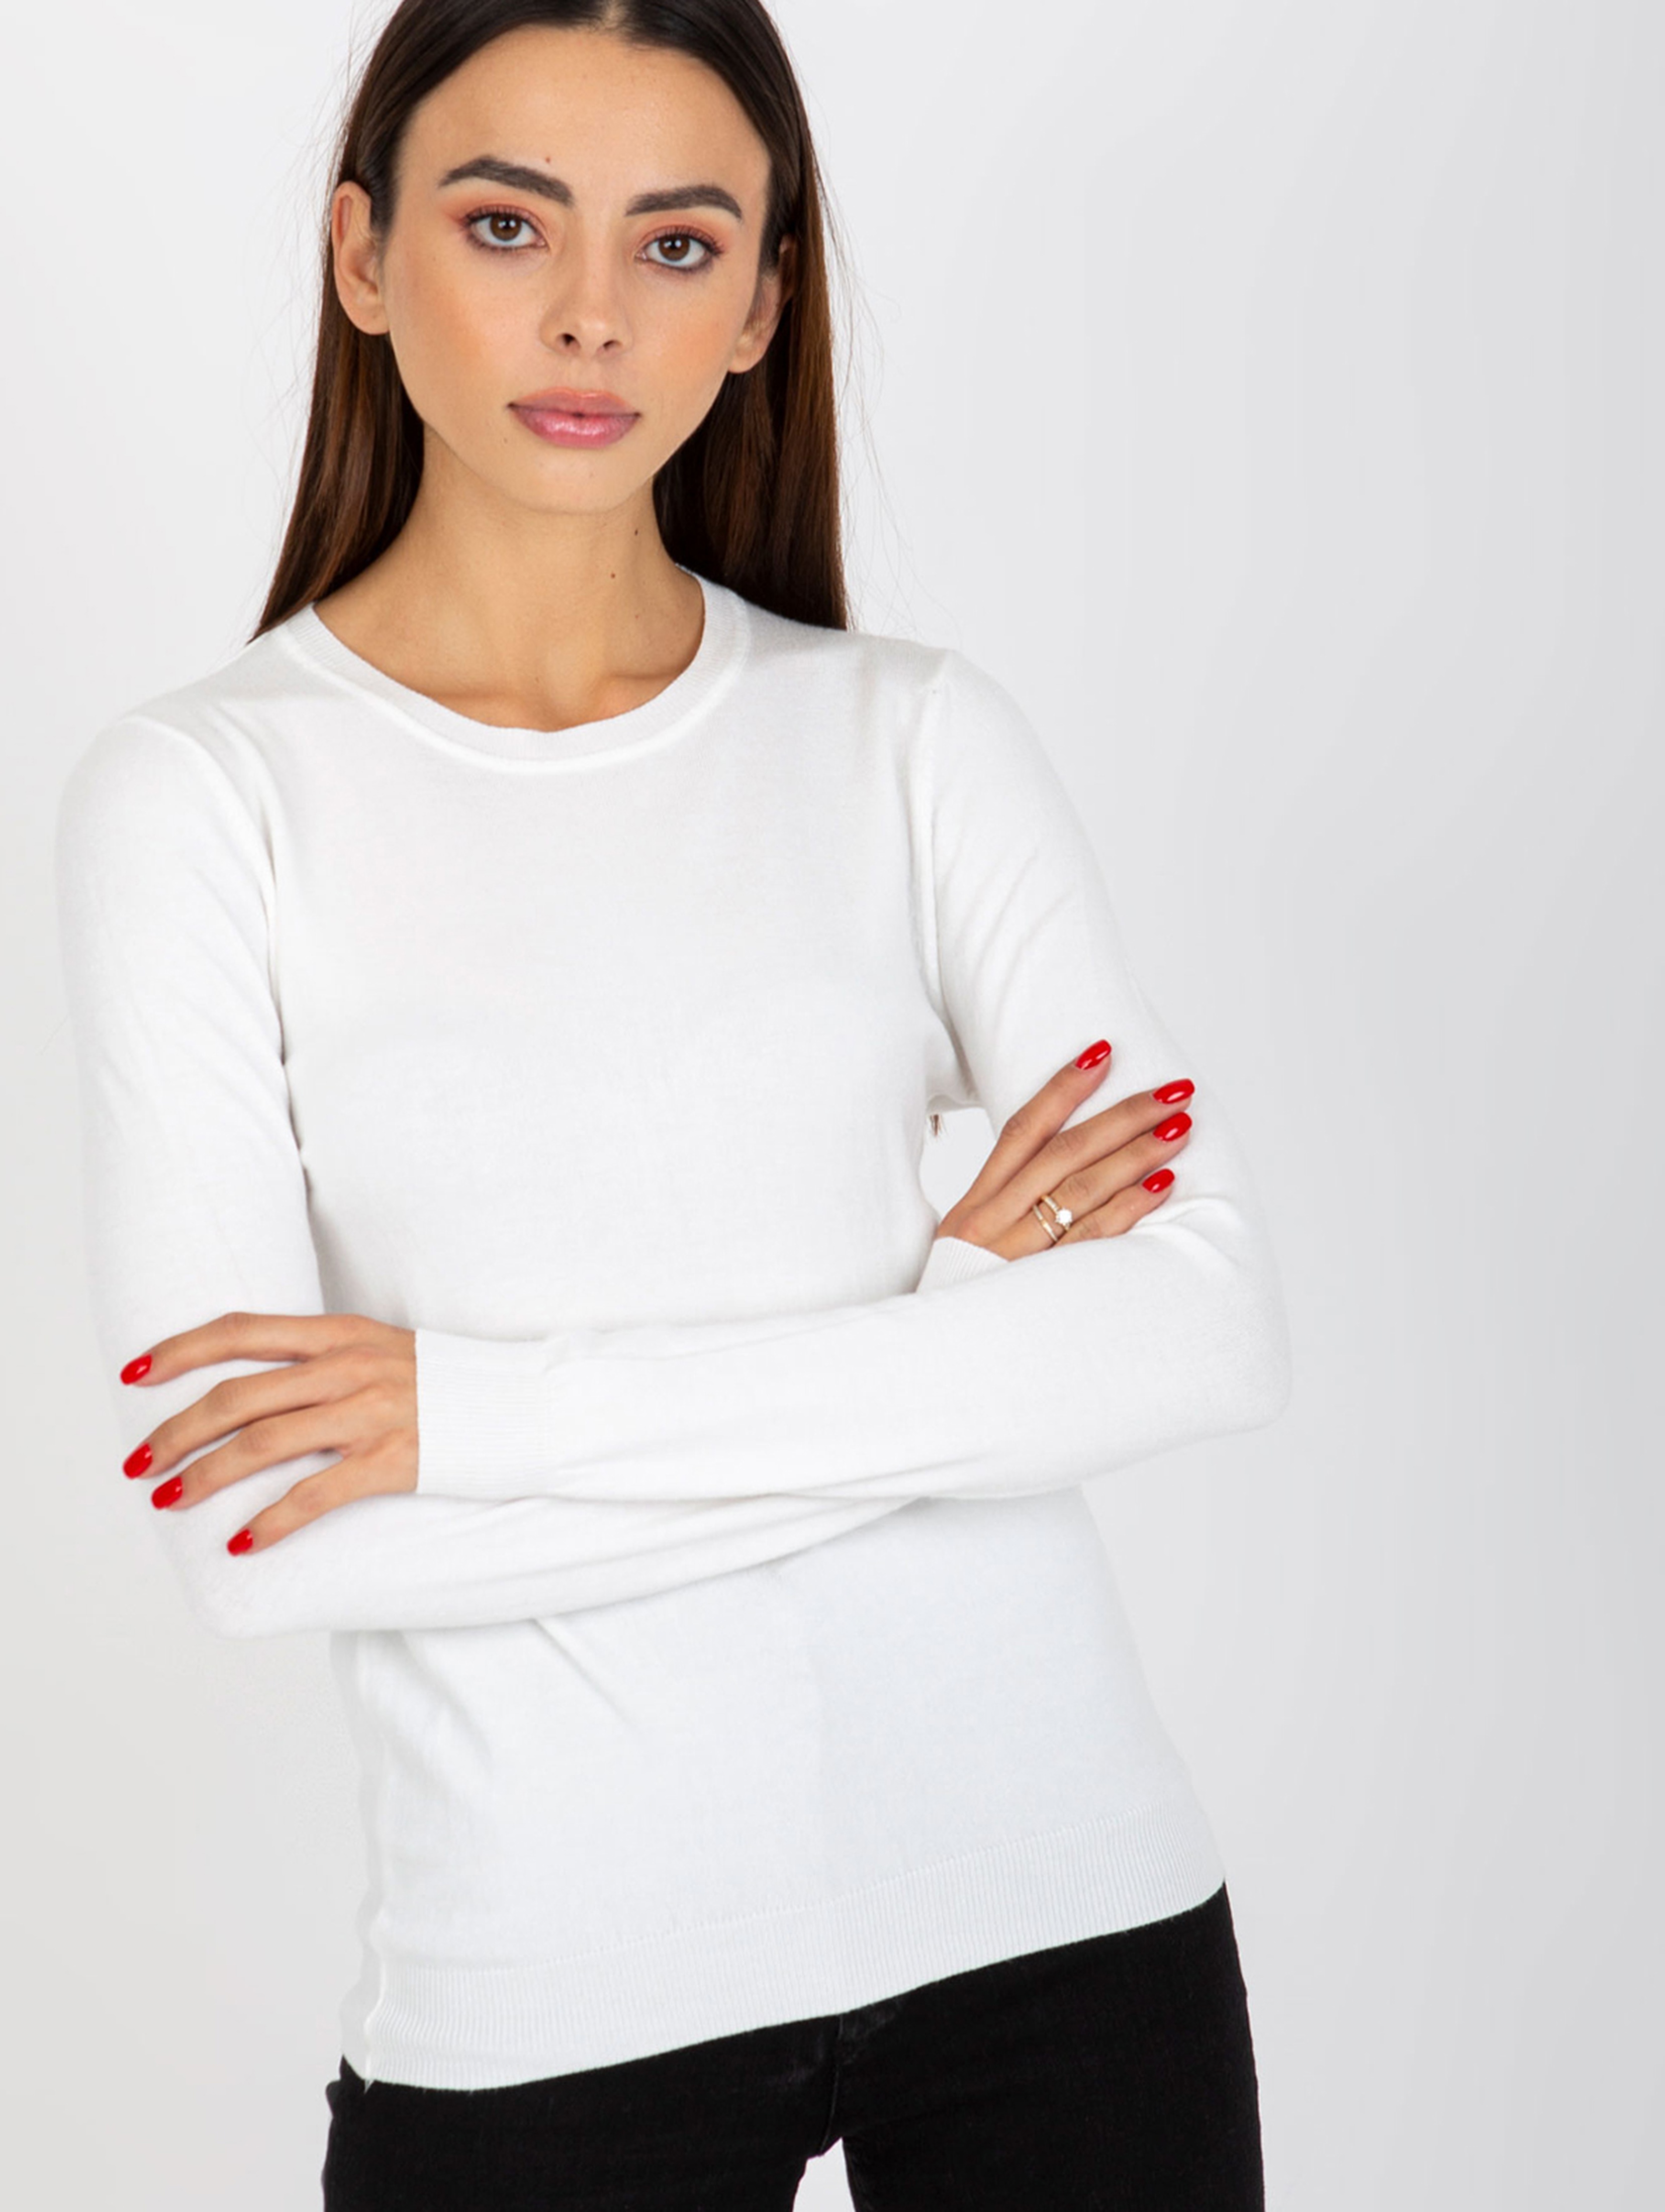 Biały gładki sweter klasyczny z okrągłym dekoltem